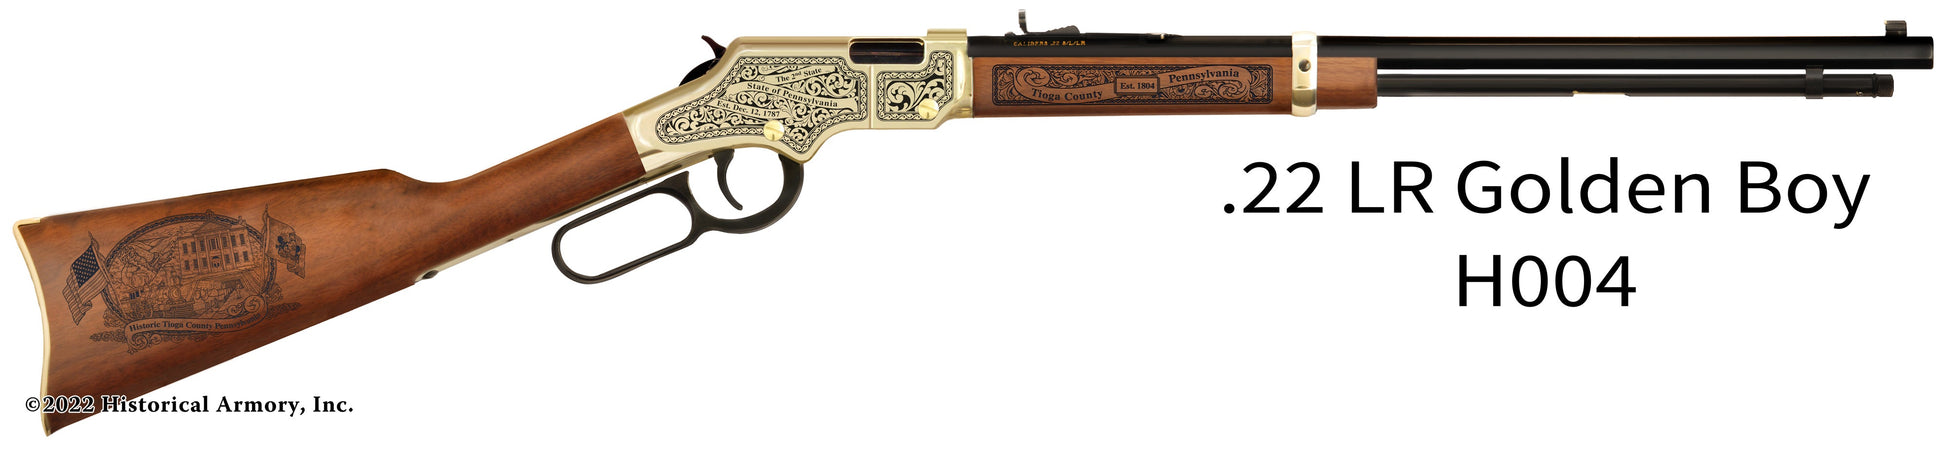 Tioga County Pennsylvania Engraved Henry Golden Boy Rifle